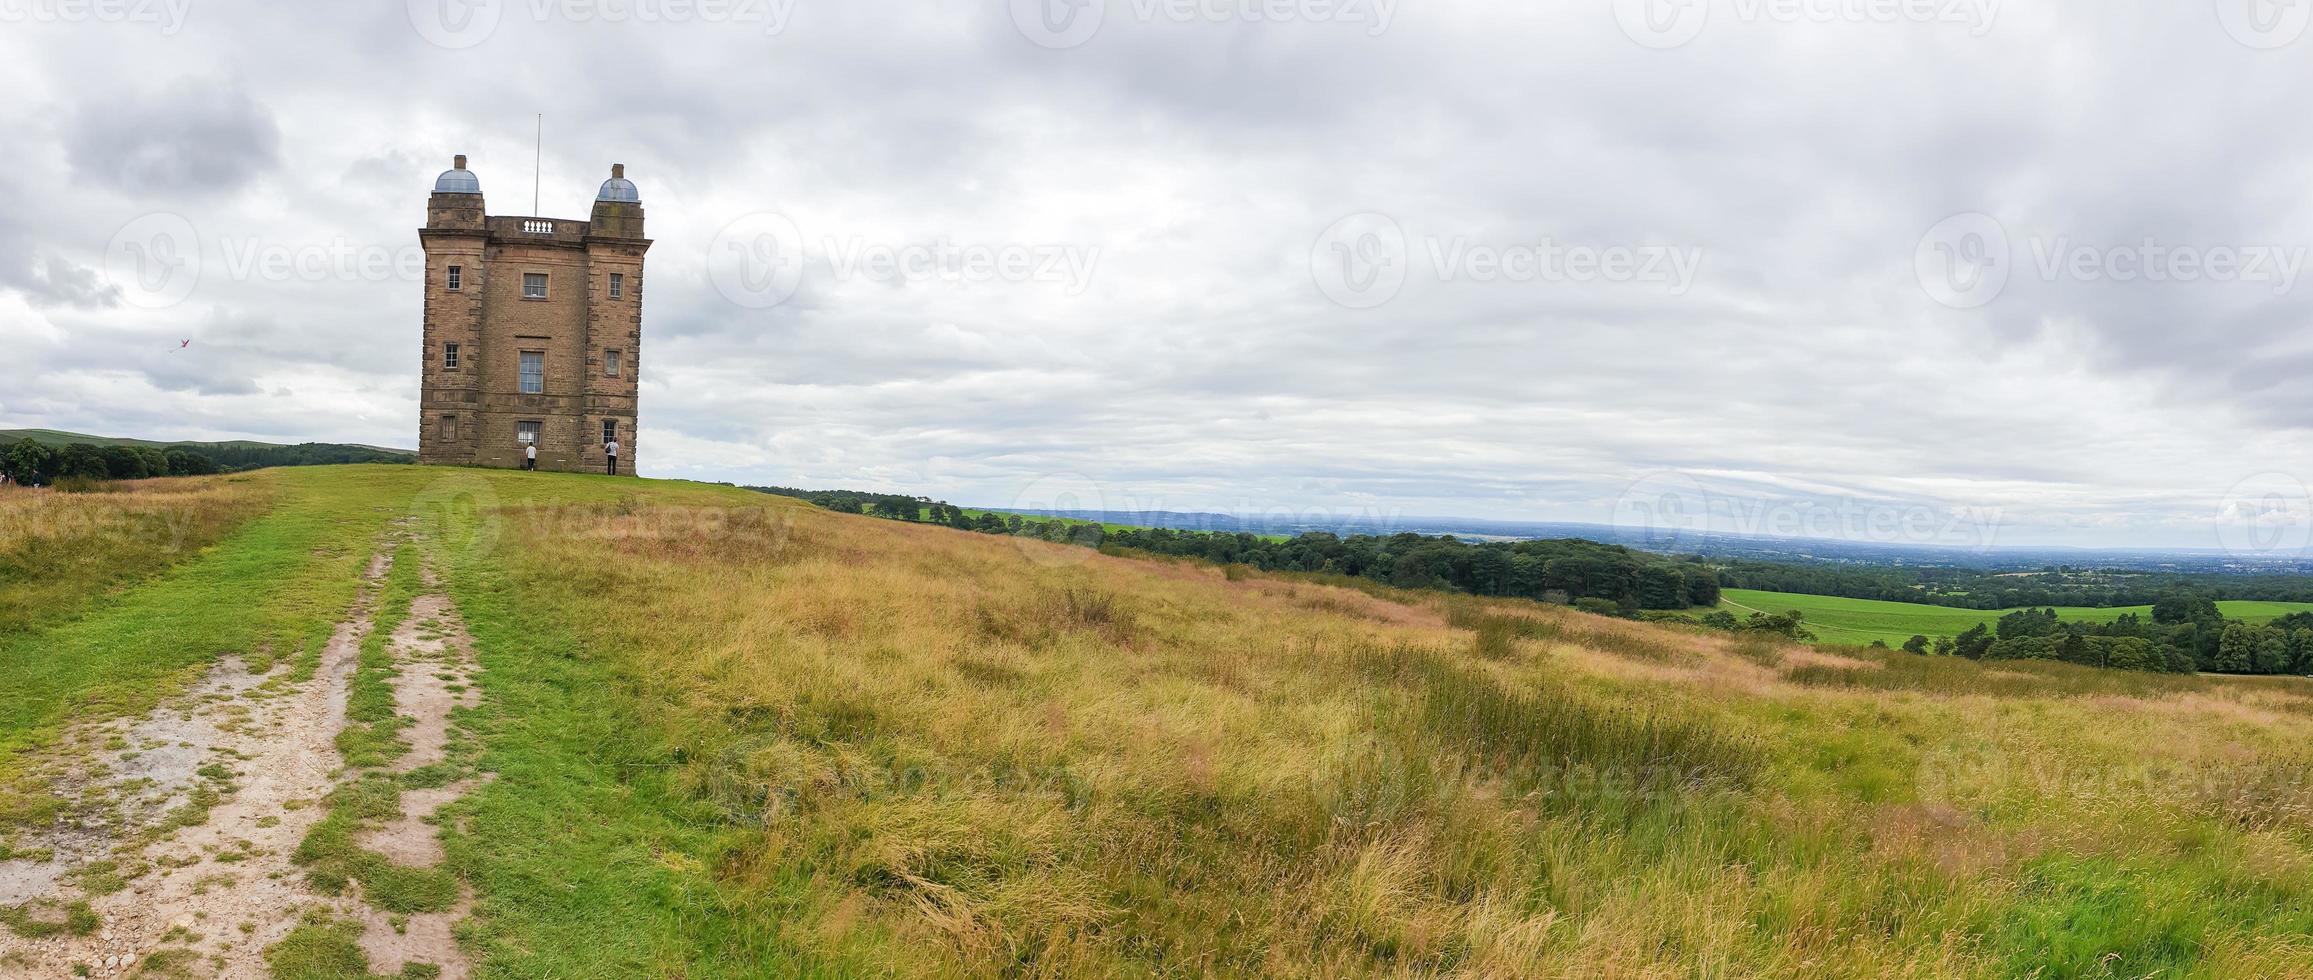 La torre de la jaula y el paisaje circundante en la distancia, Peak District, Reino Unido foto